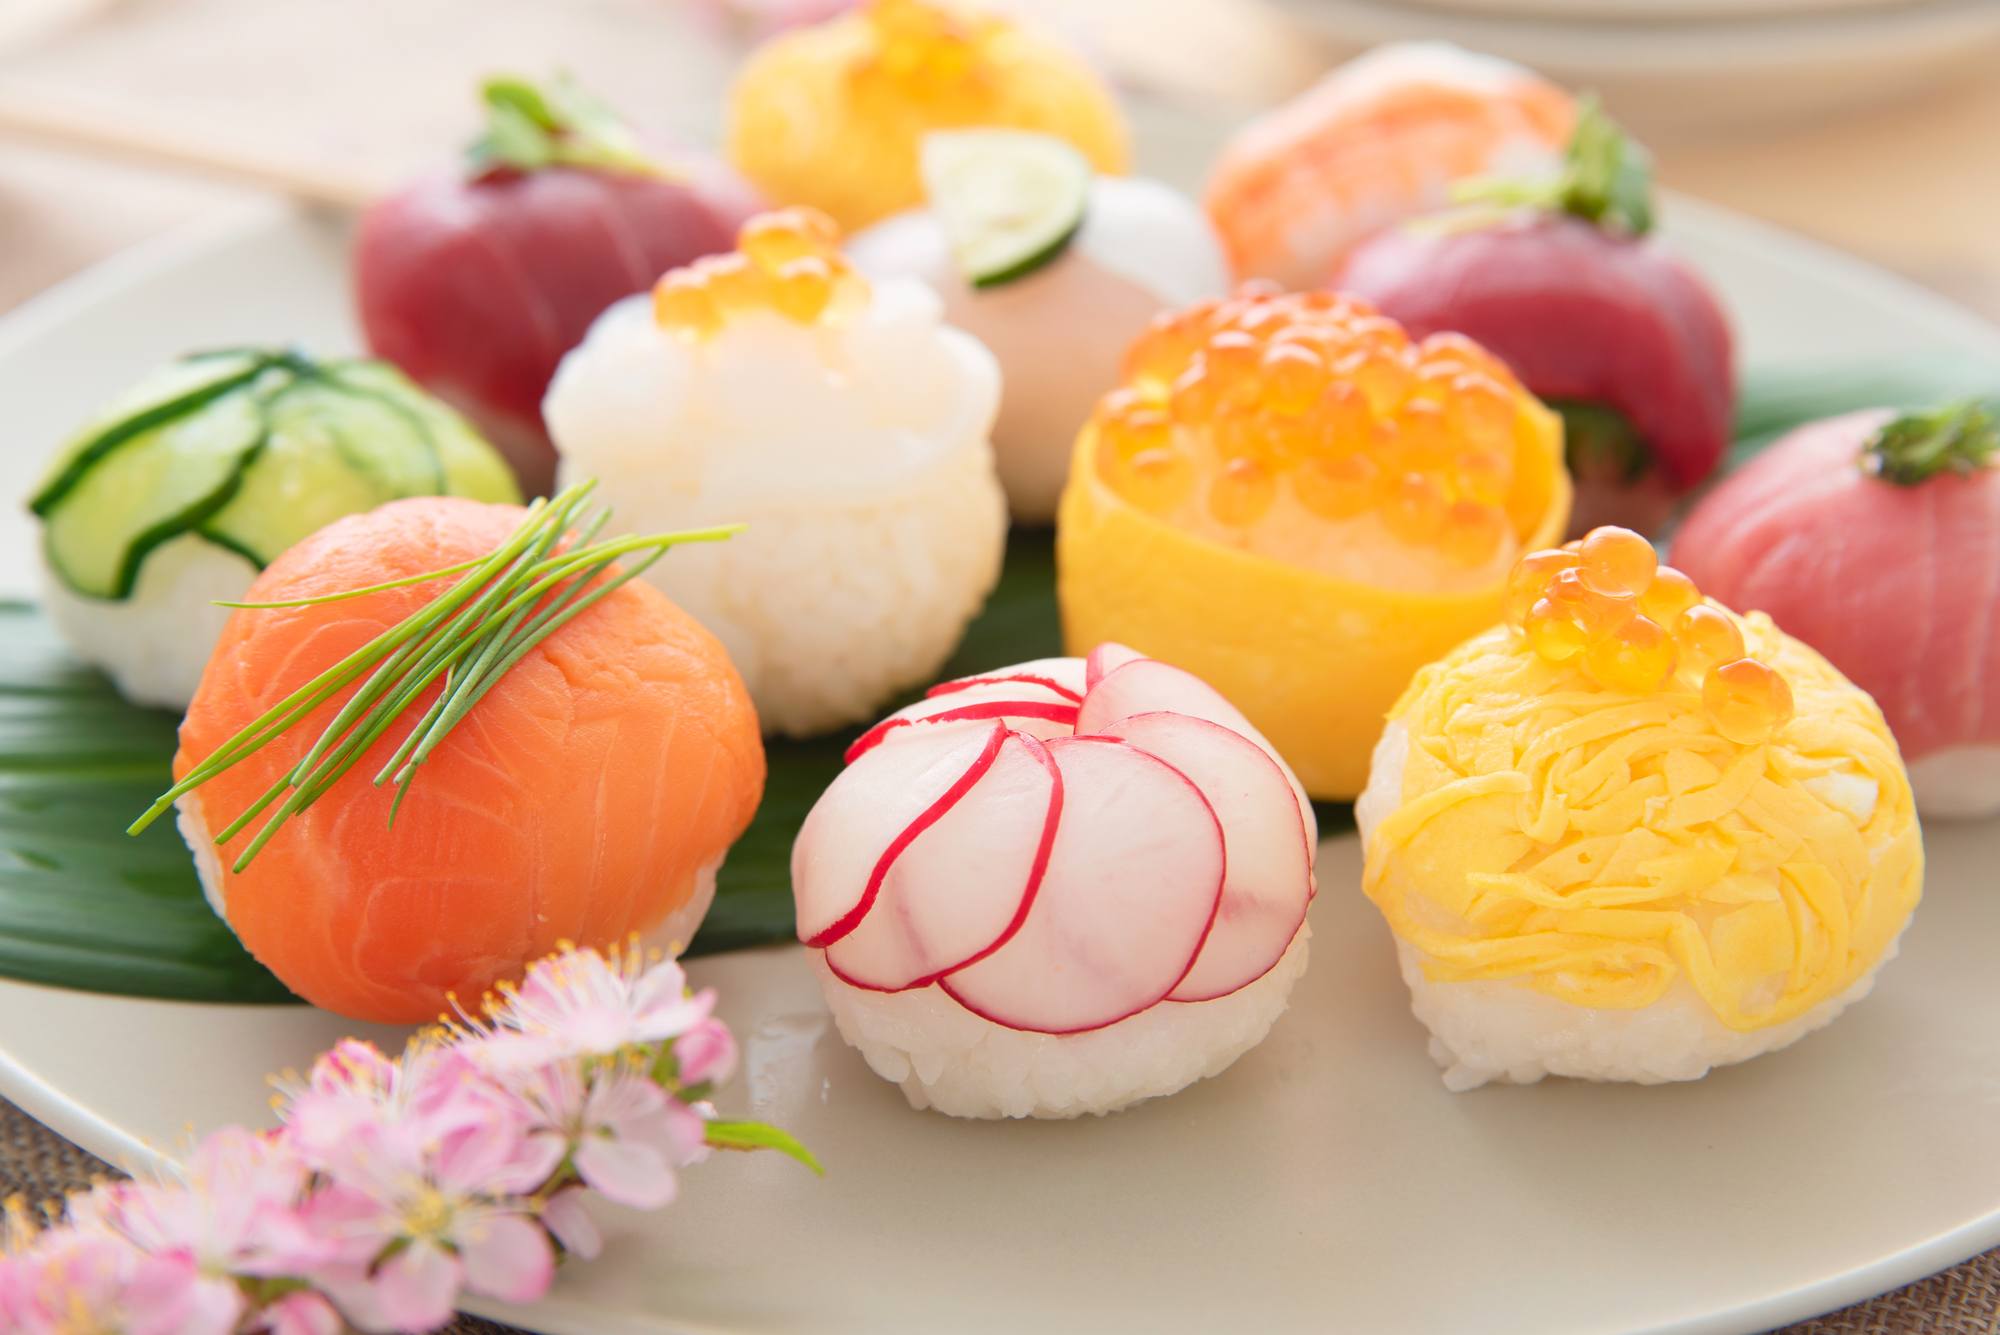 お寿司 手毬 てまり 寿司について 日本料理 和食 しゃぶしゃぶ 瓢喜 ヒョウキ